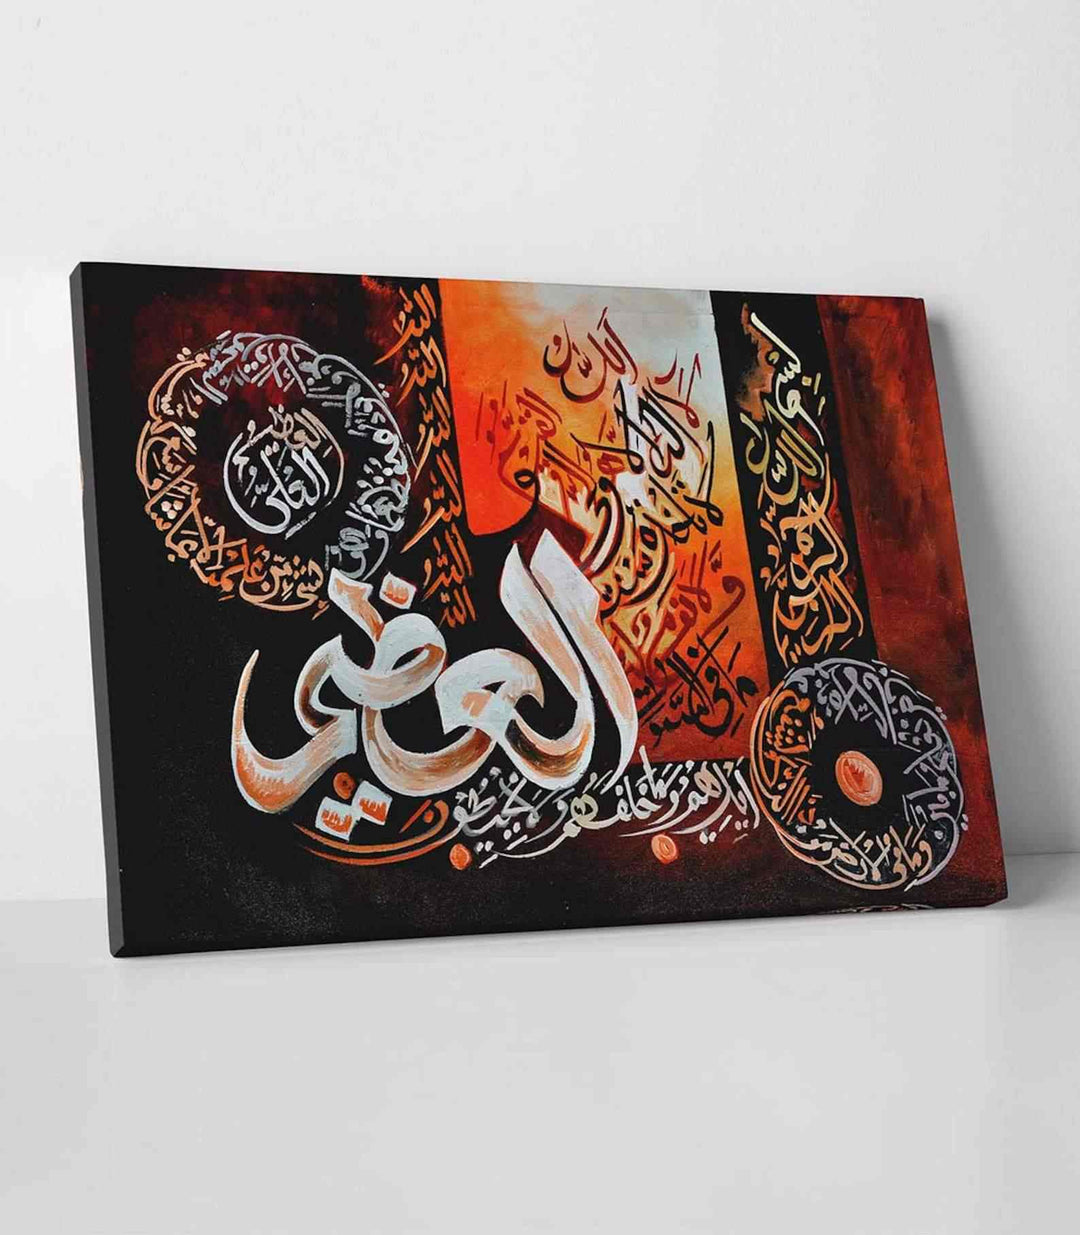 Ayatul Kursi v8 Oil Painting Reproduction Canvas Print Islamic Wall Art - Islamic Wall Art Store